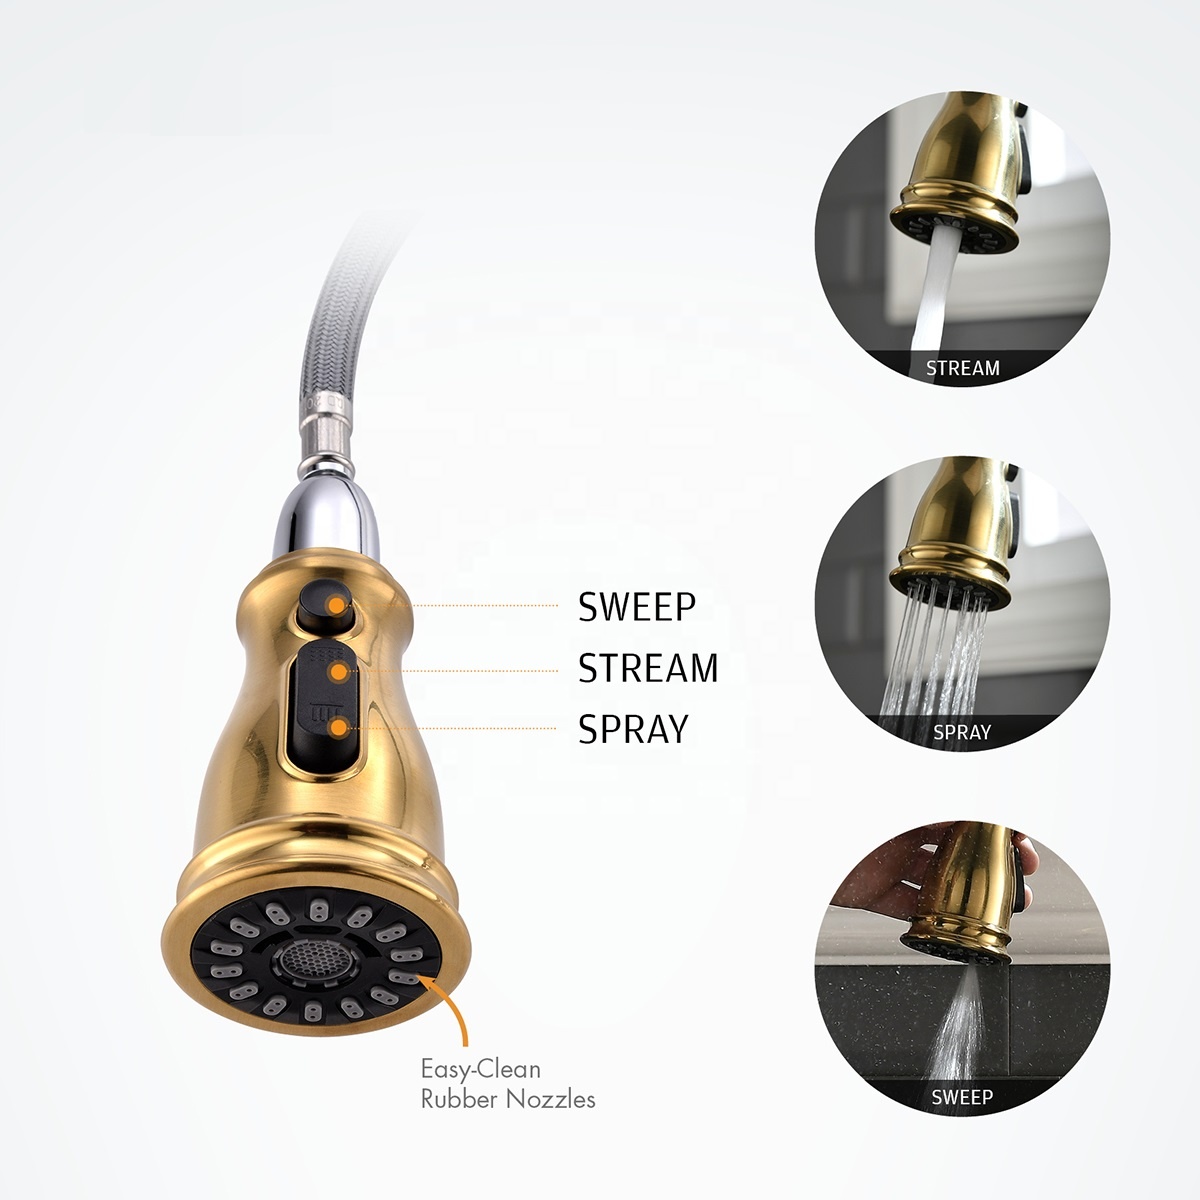 Luxus-Küchenarmatur, 360 drehbarer Küchenarmatur-Sprayer, Duschkopf, neuestes Design, robuste Küchenarmatur